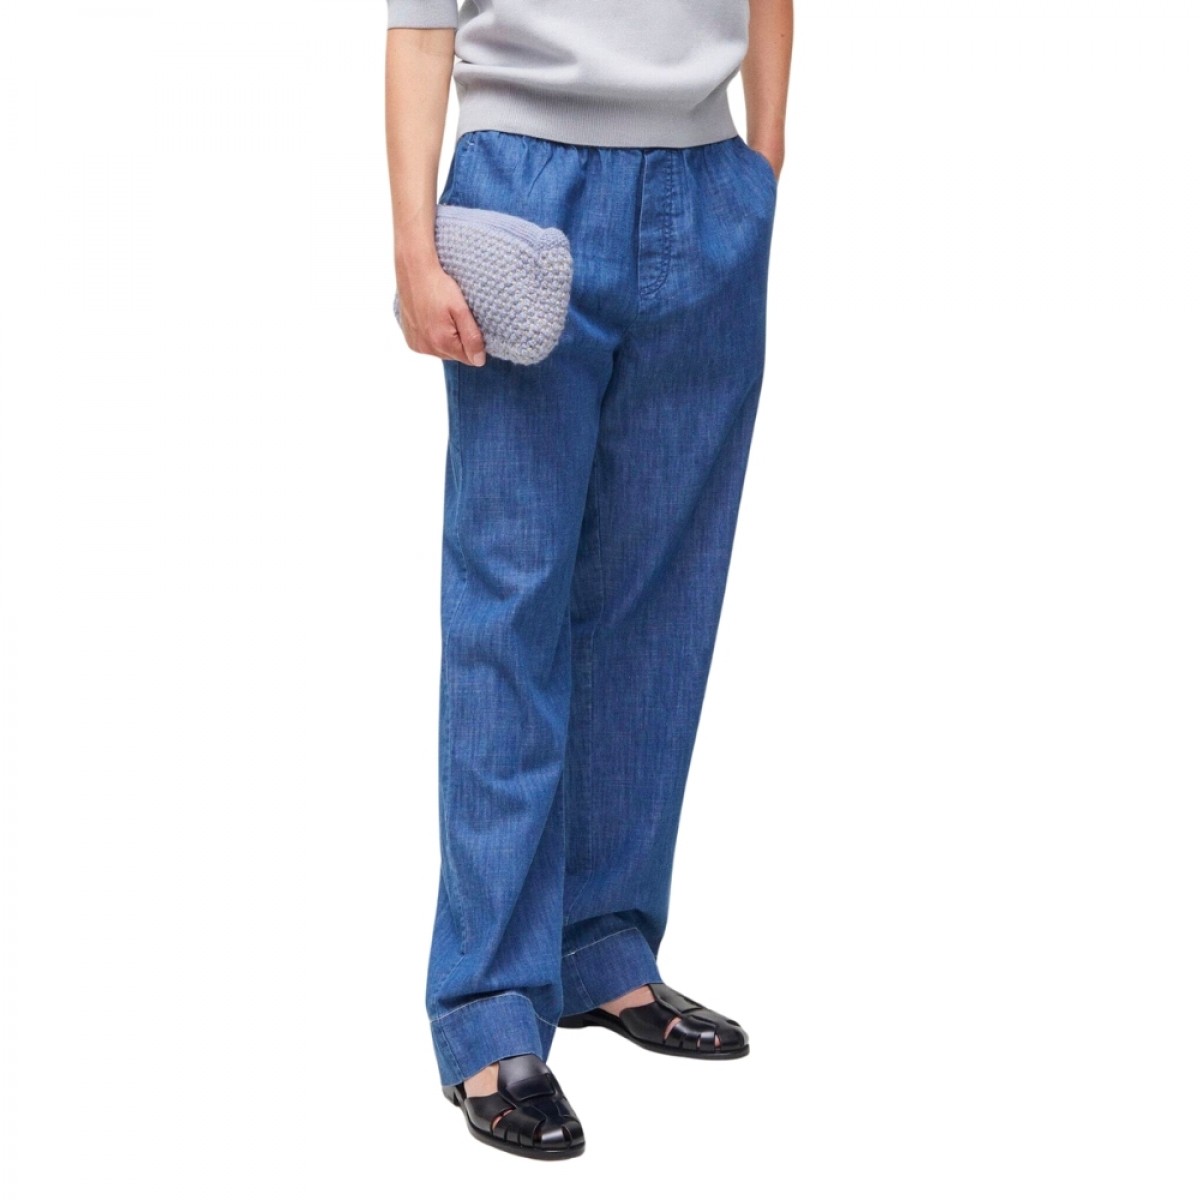 miles pant denim - blue jeans - model front